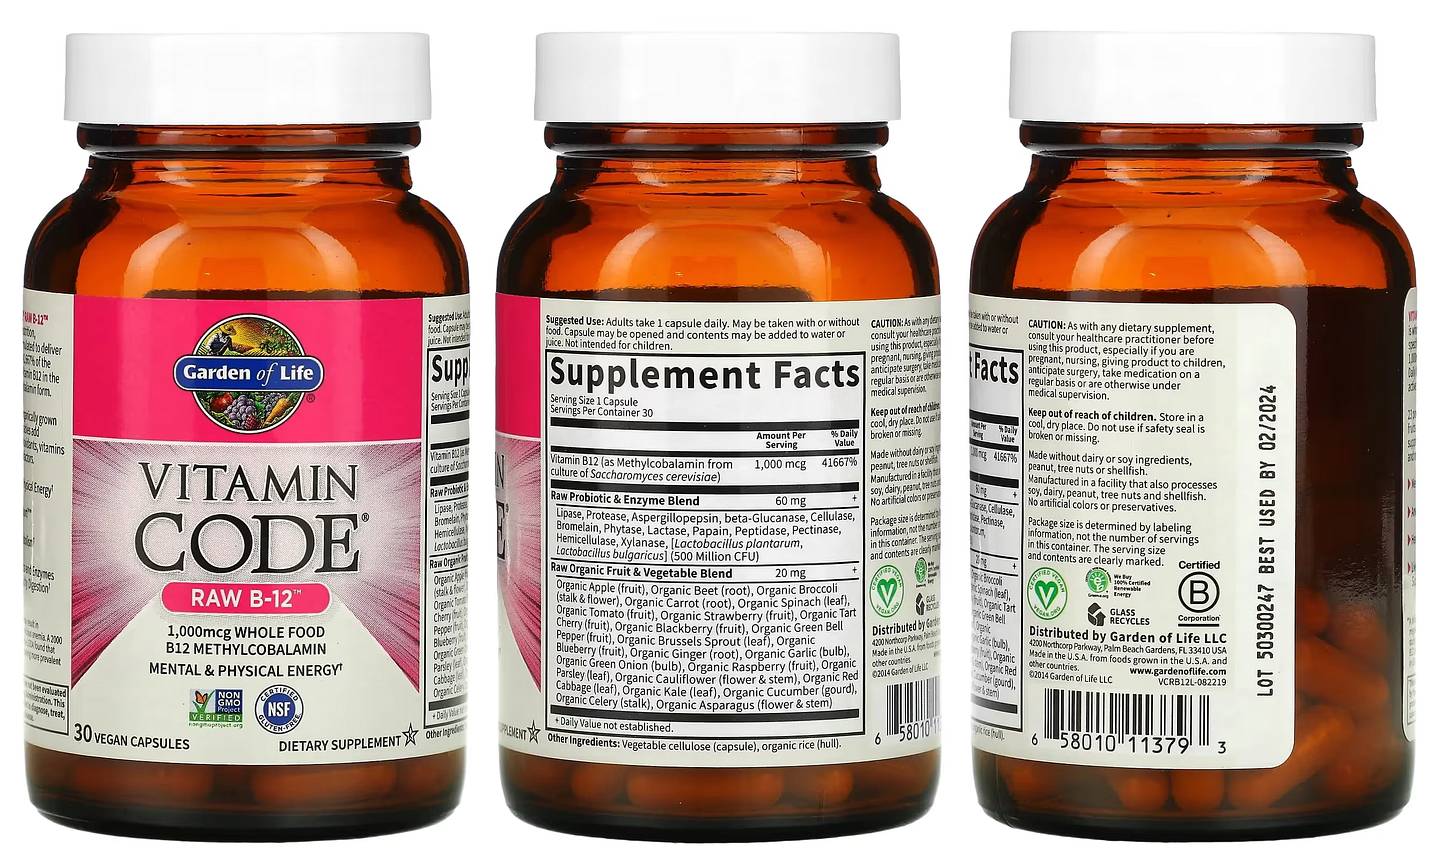 Garden of Life, Vitamin Code packaging